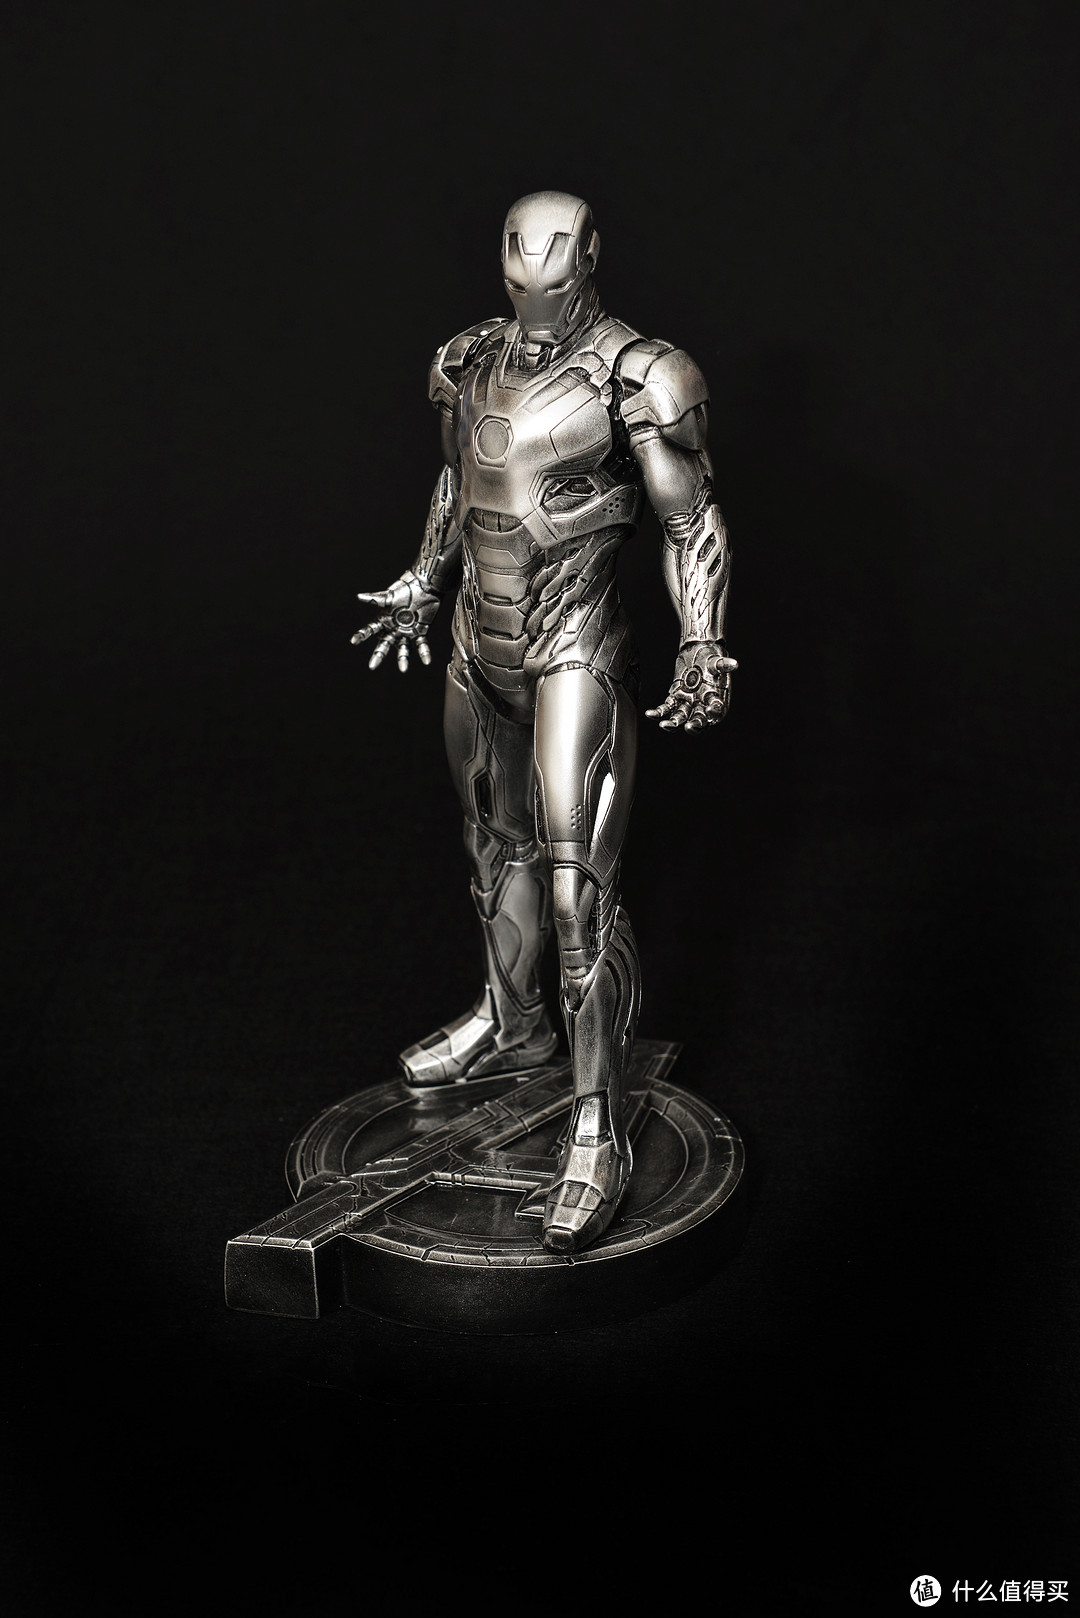 意外的圣诞礼物—1:6 钢铁侠 MK45 雕像